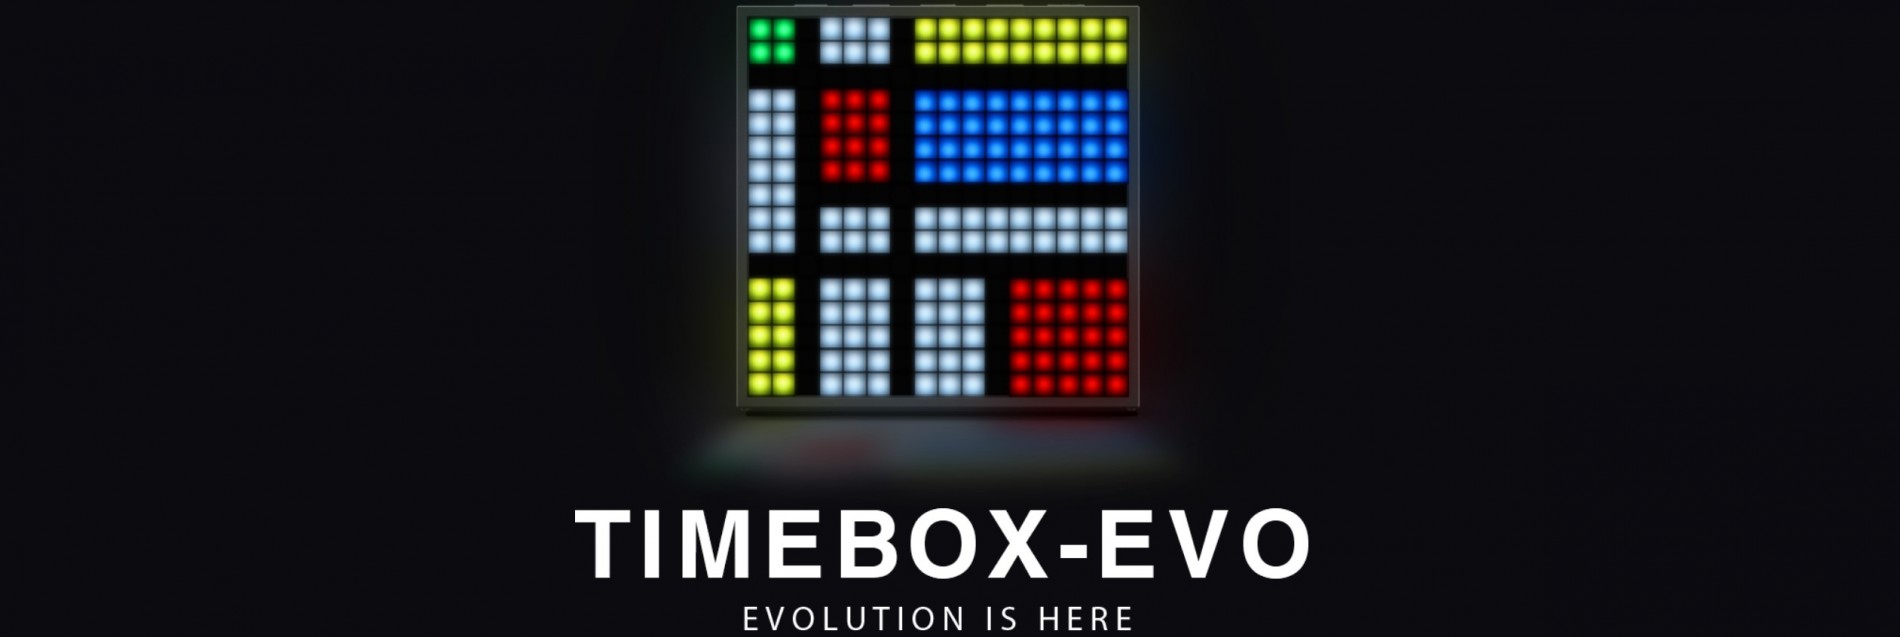 divoom_timebox_evo